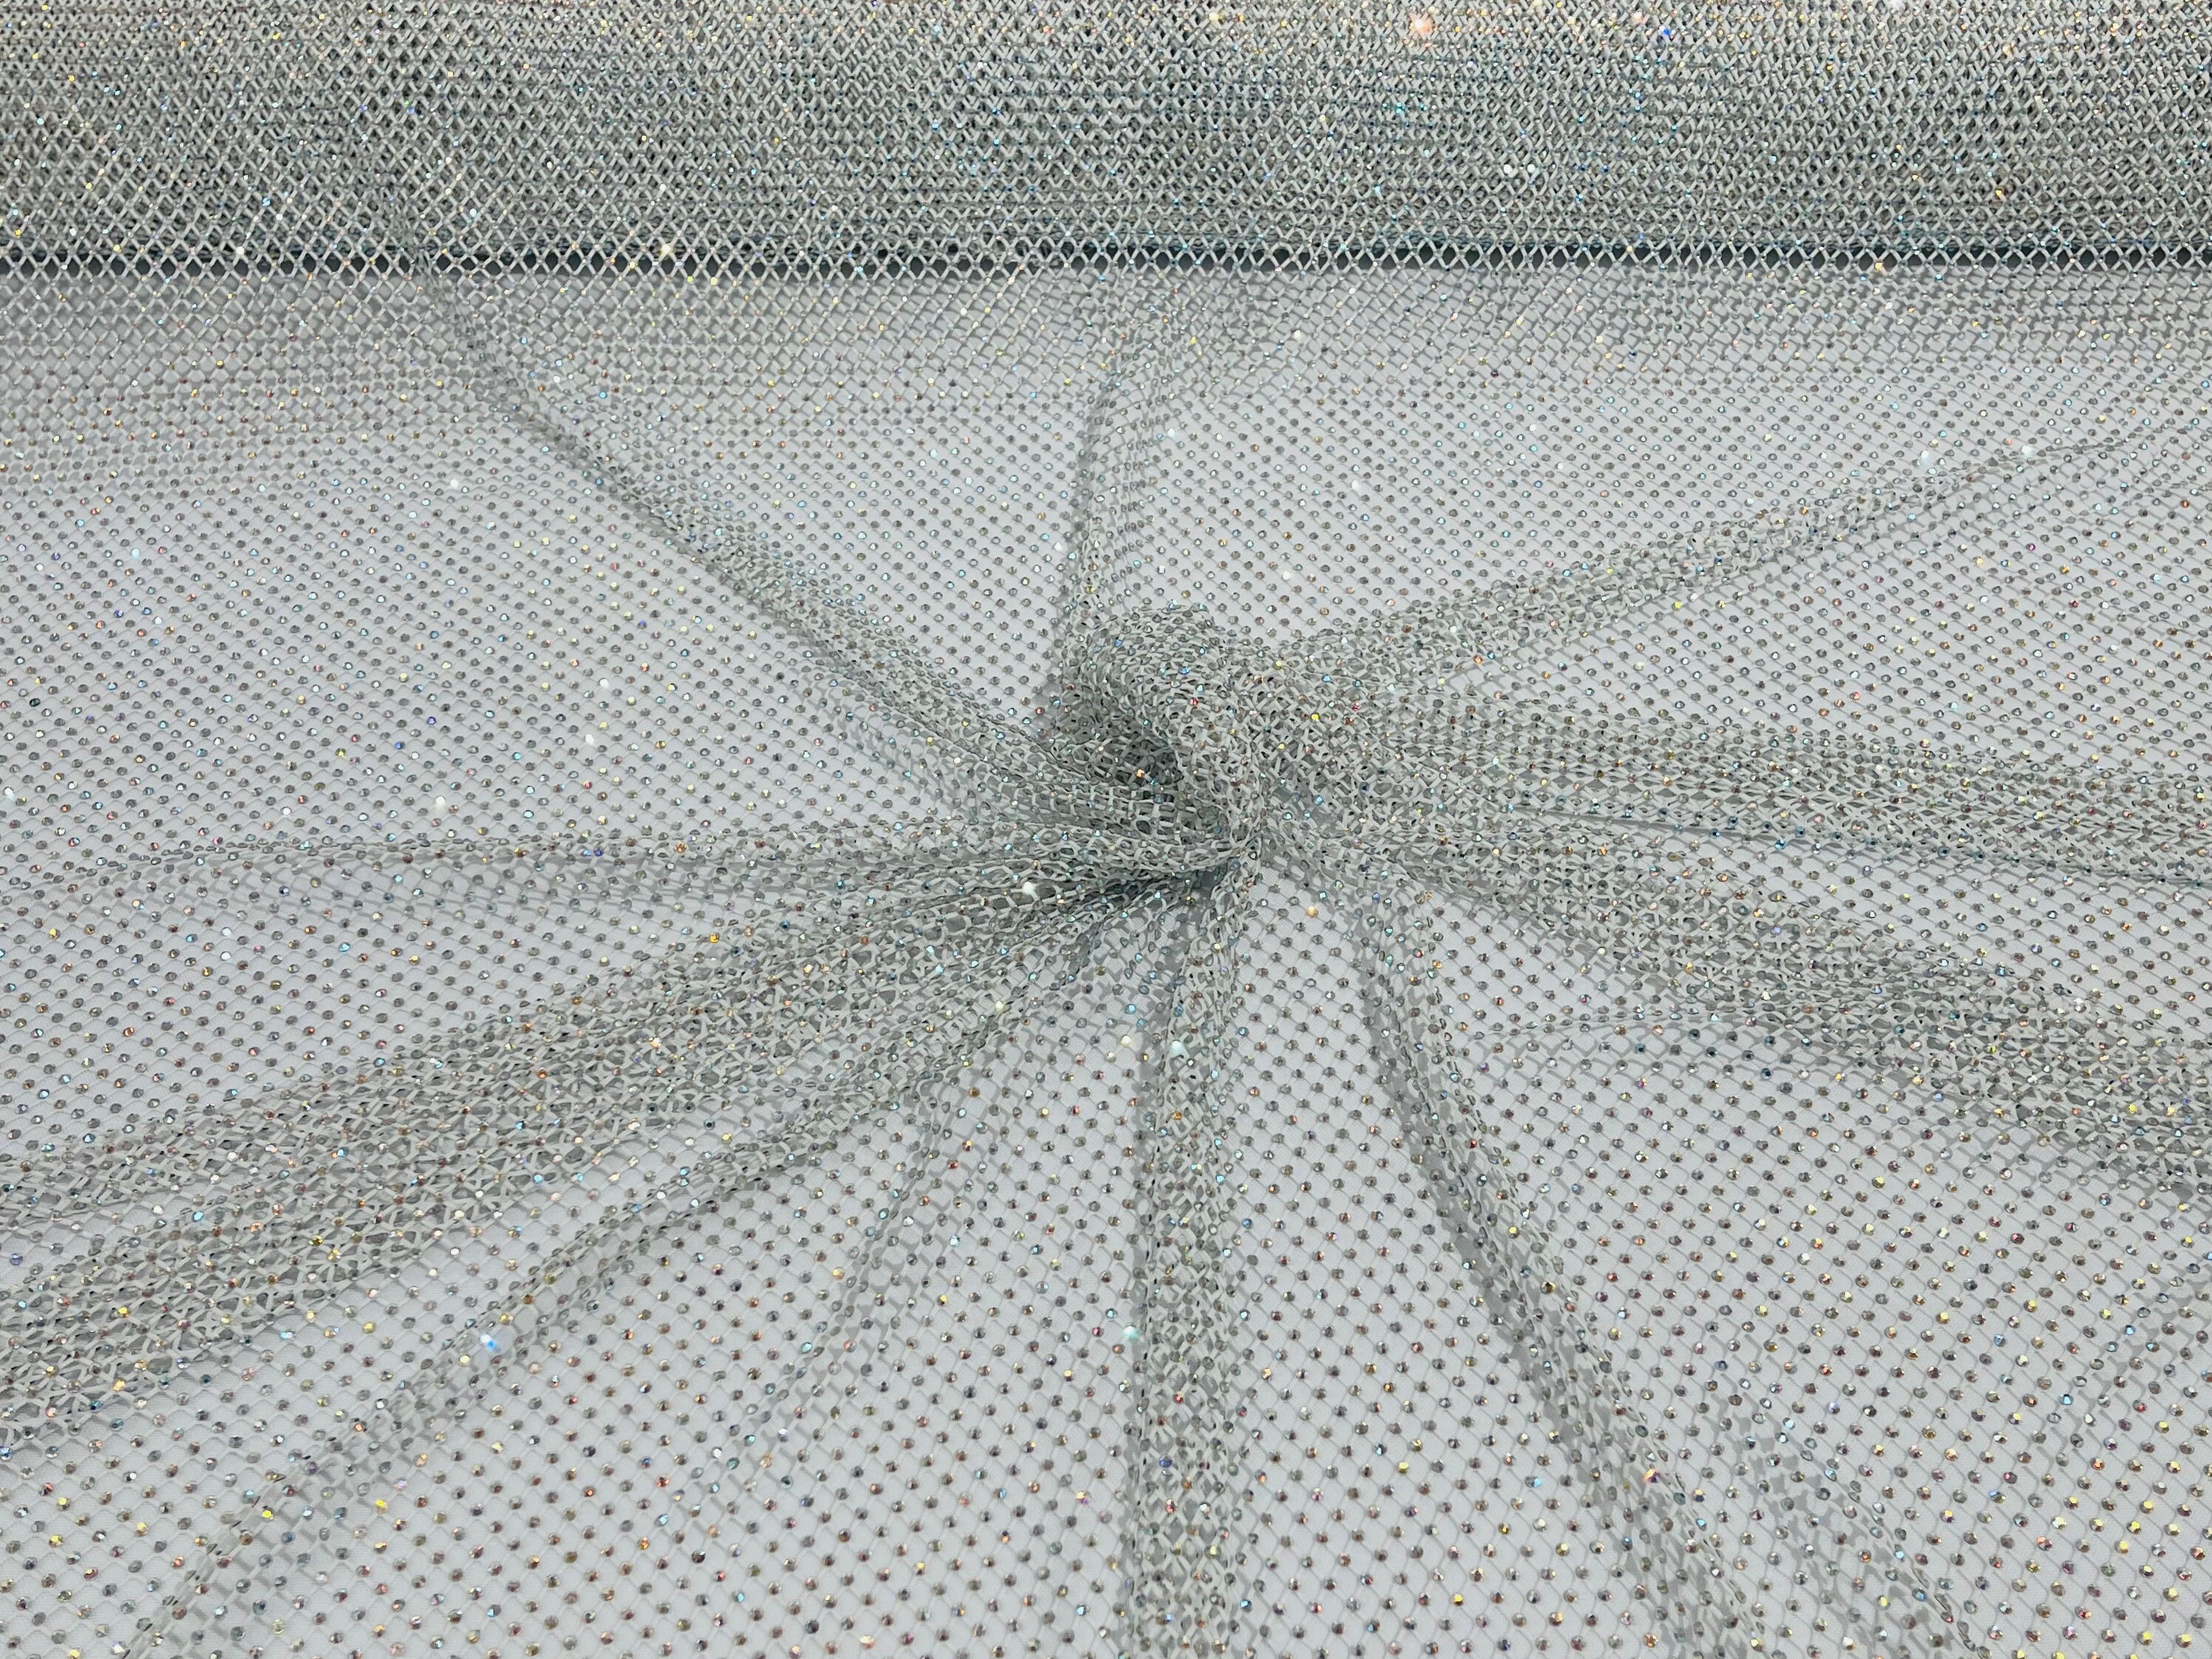 White mesh netting fabric – Like Sew Amazing